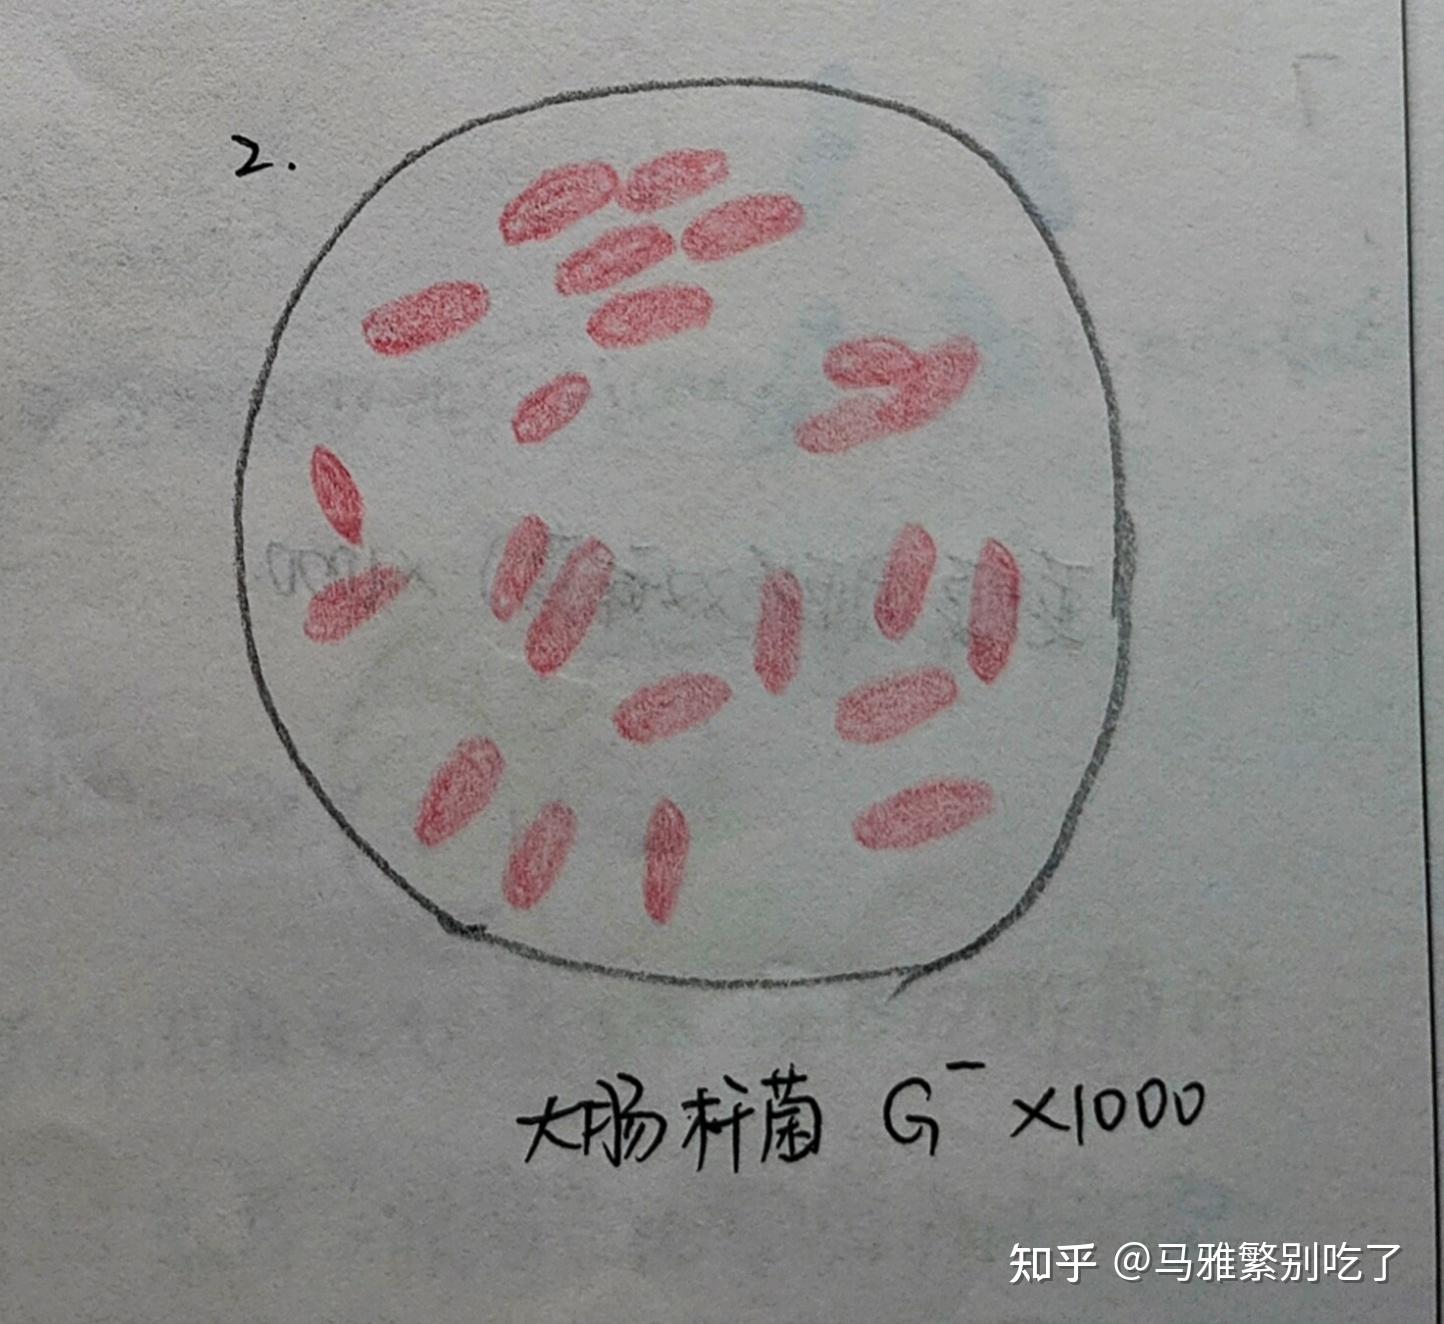 变形杆菌鞭毛手绘图片